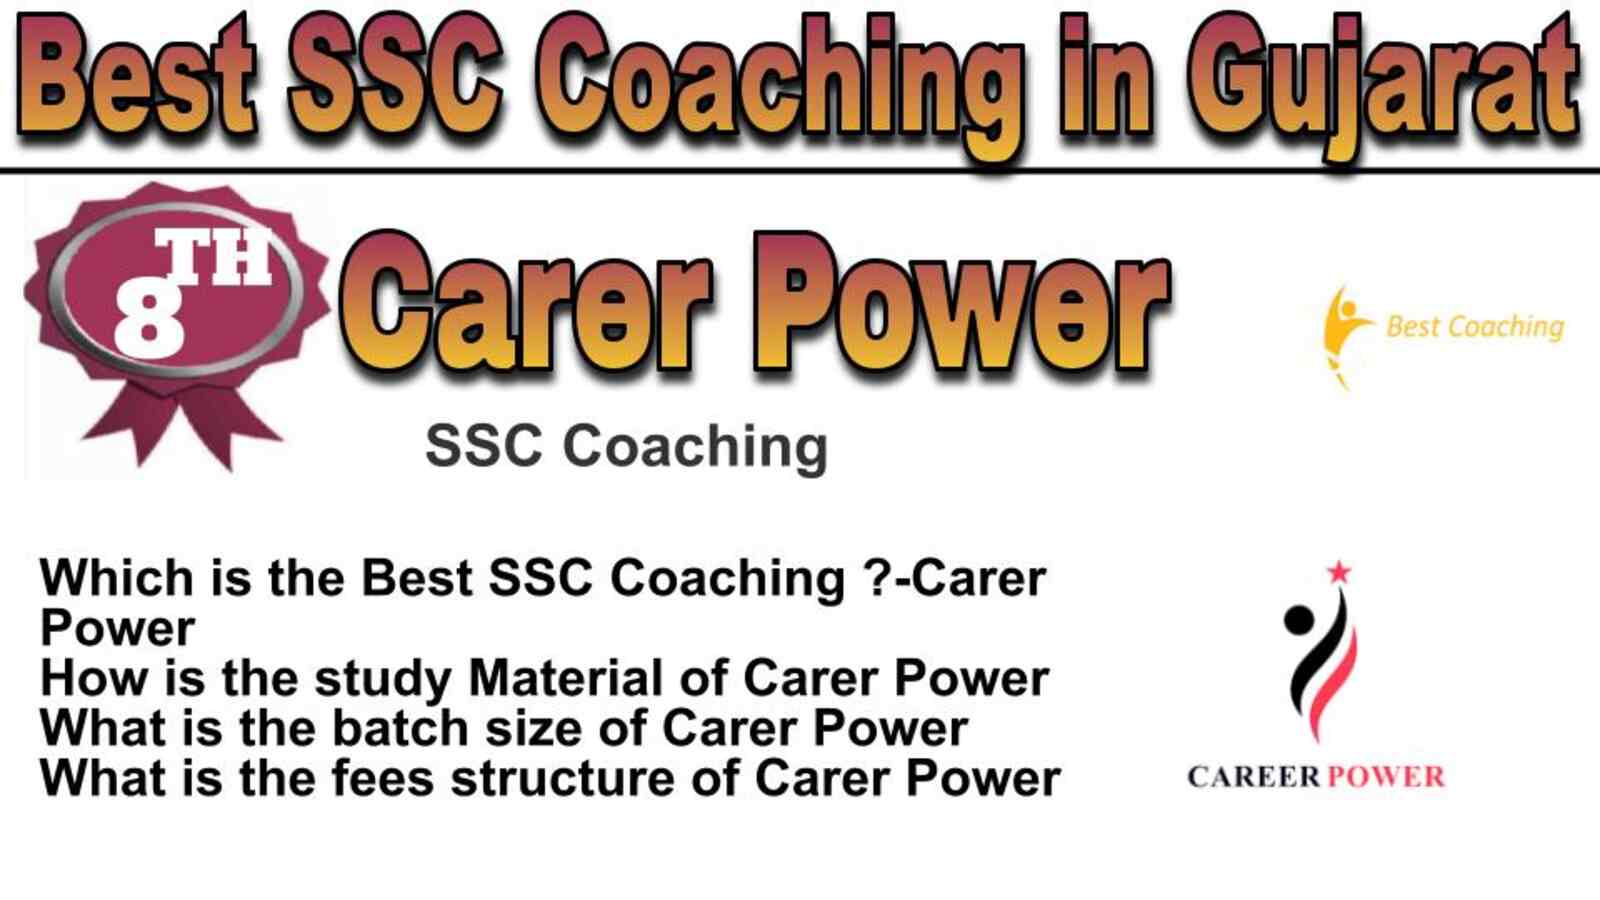 Rank 8 best SSC coaching in Gujarat